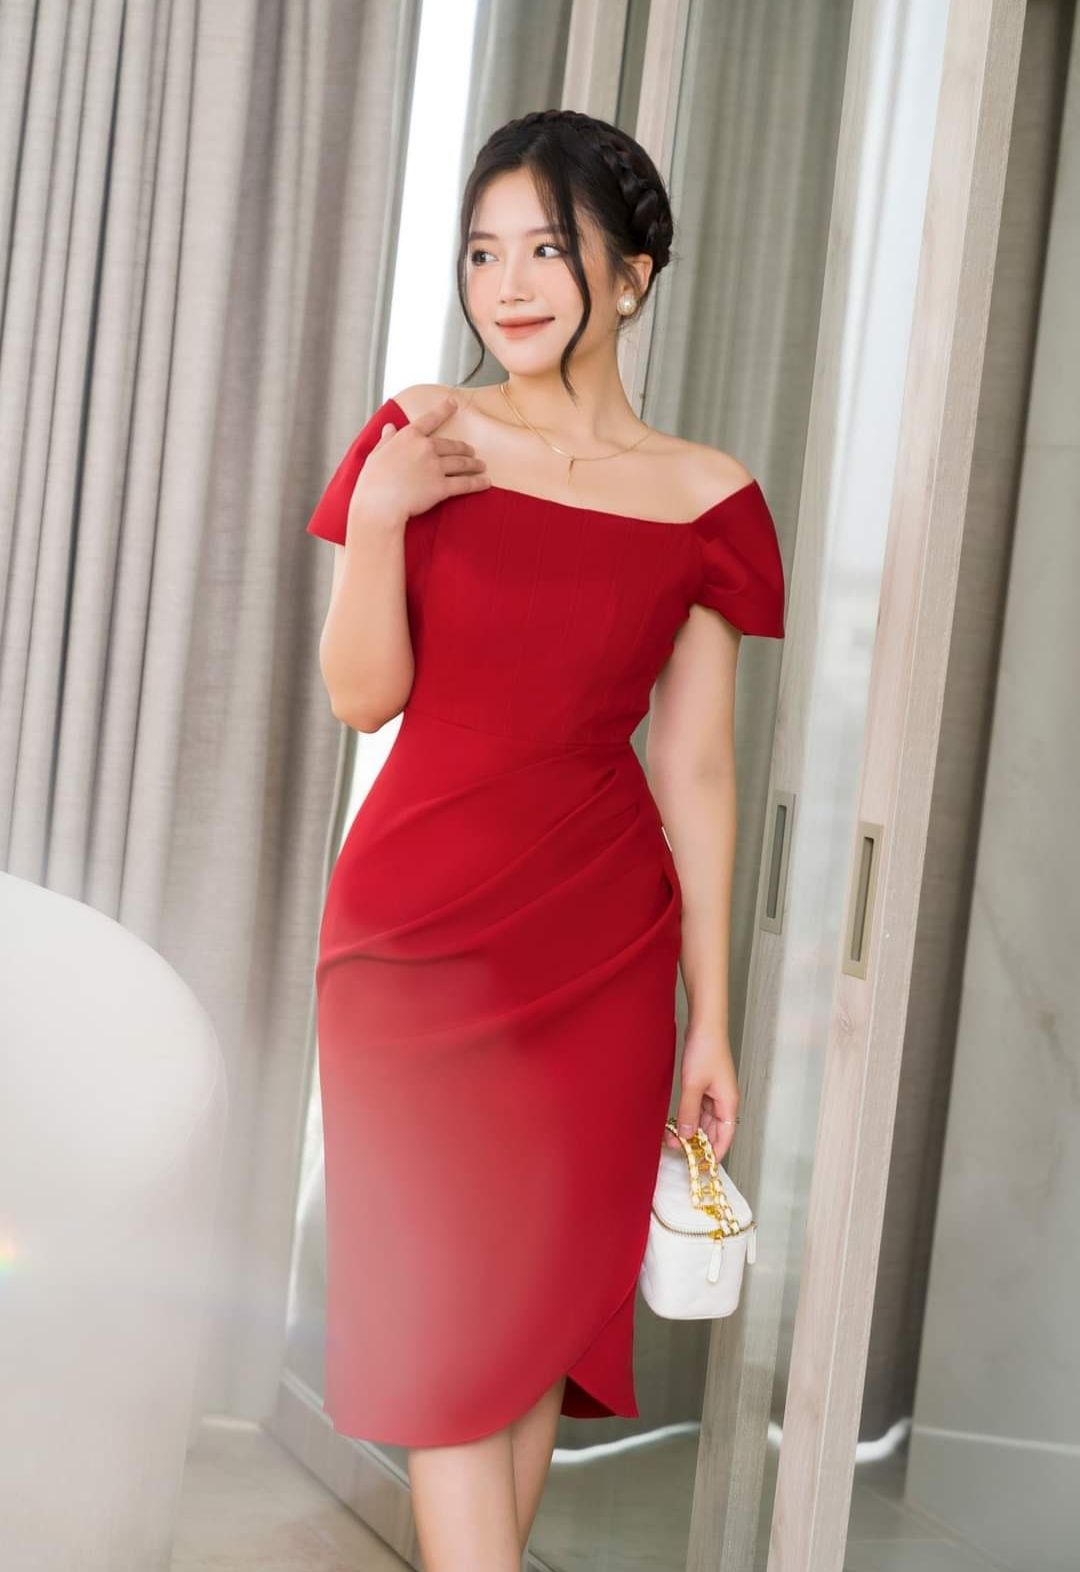 Các mẫu đầm đỏ trendy Tết 2023 đẹp sang trọng và quyến rũ nhất